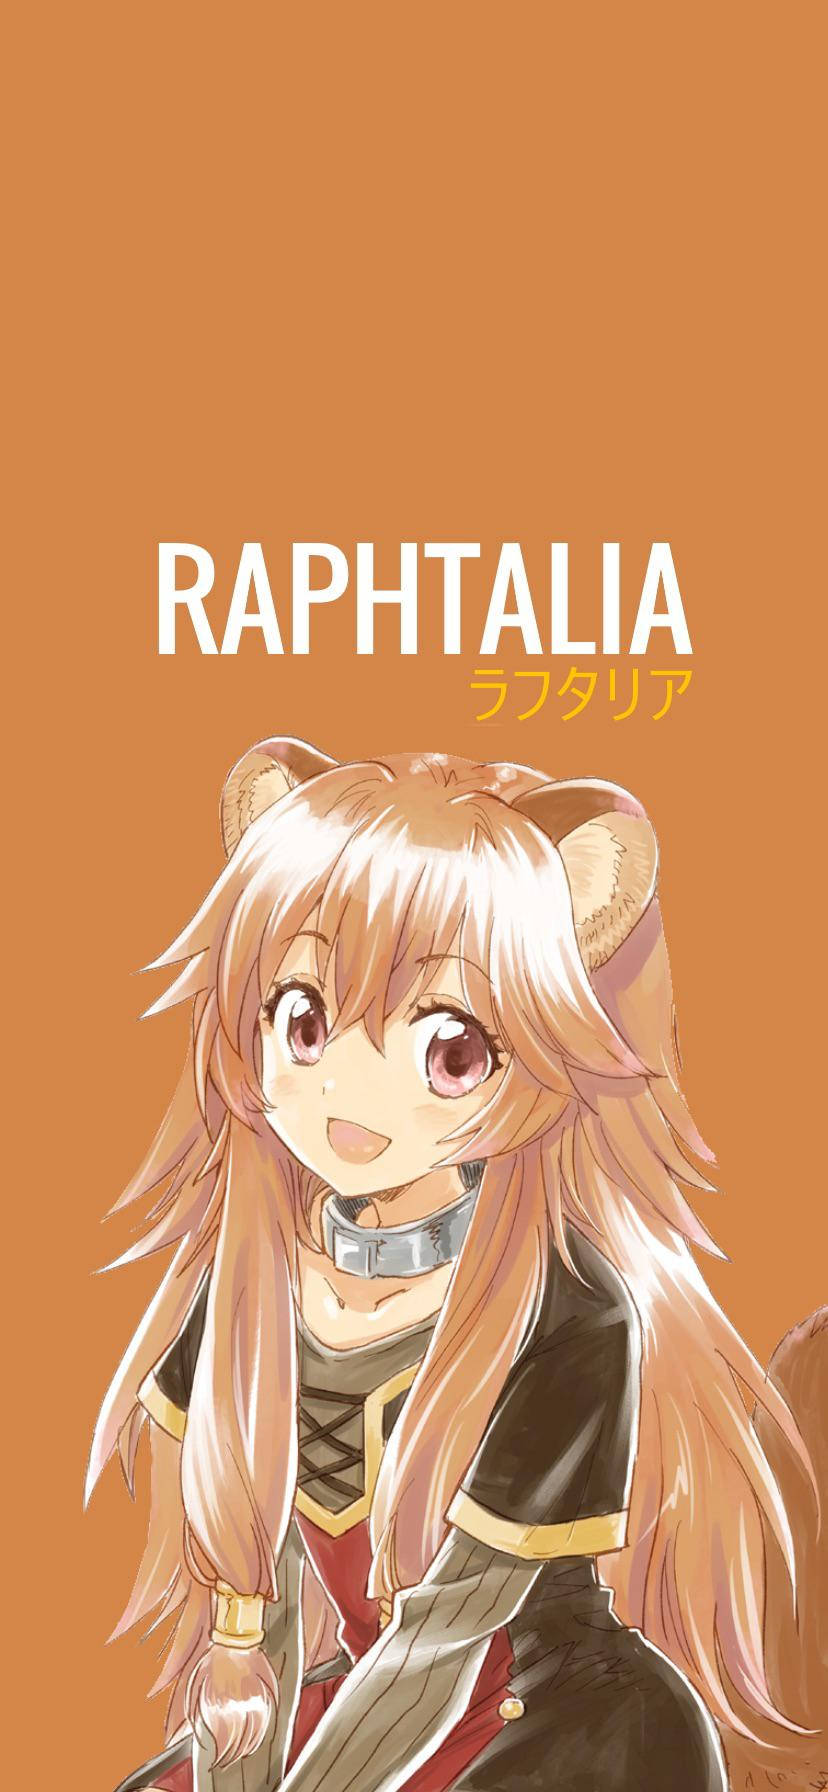 Raphaela - Raphaela - Raphaela - Raphaela - Raphae